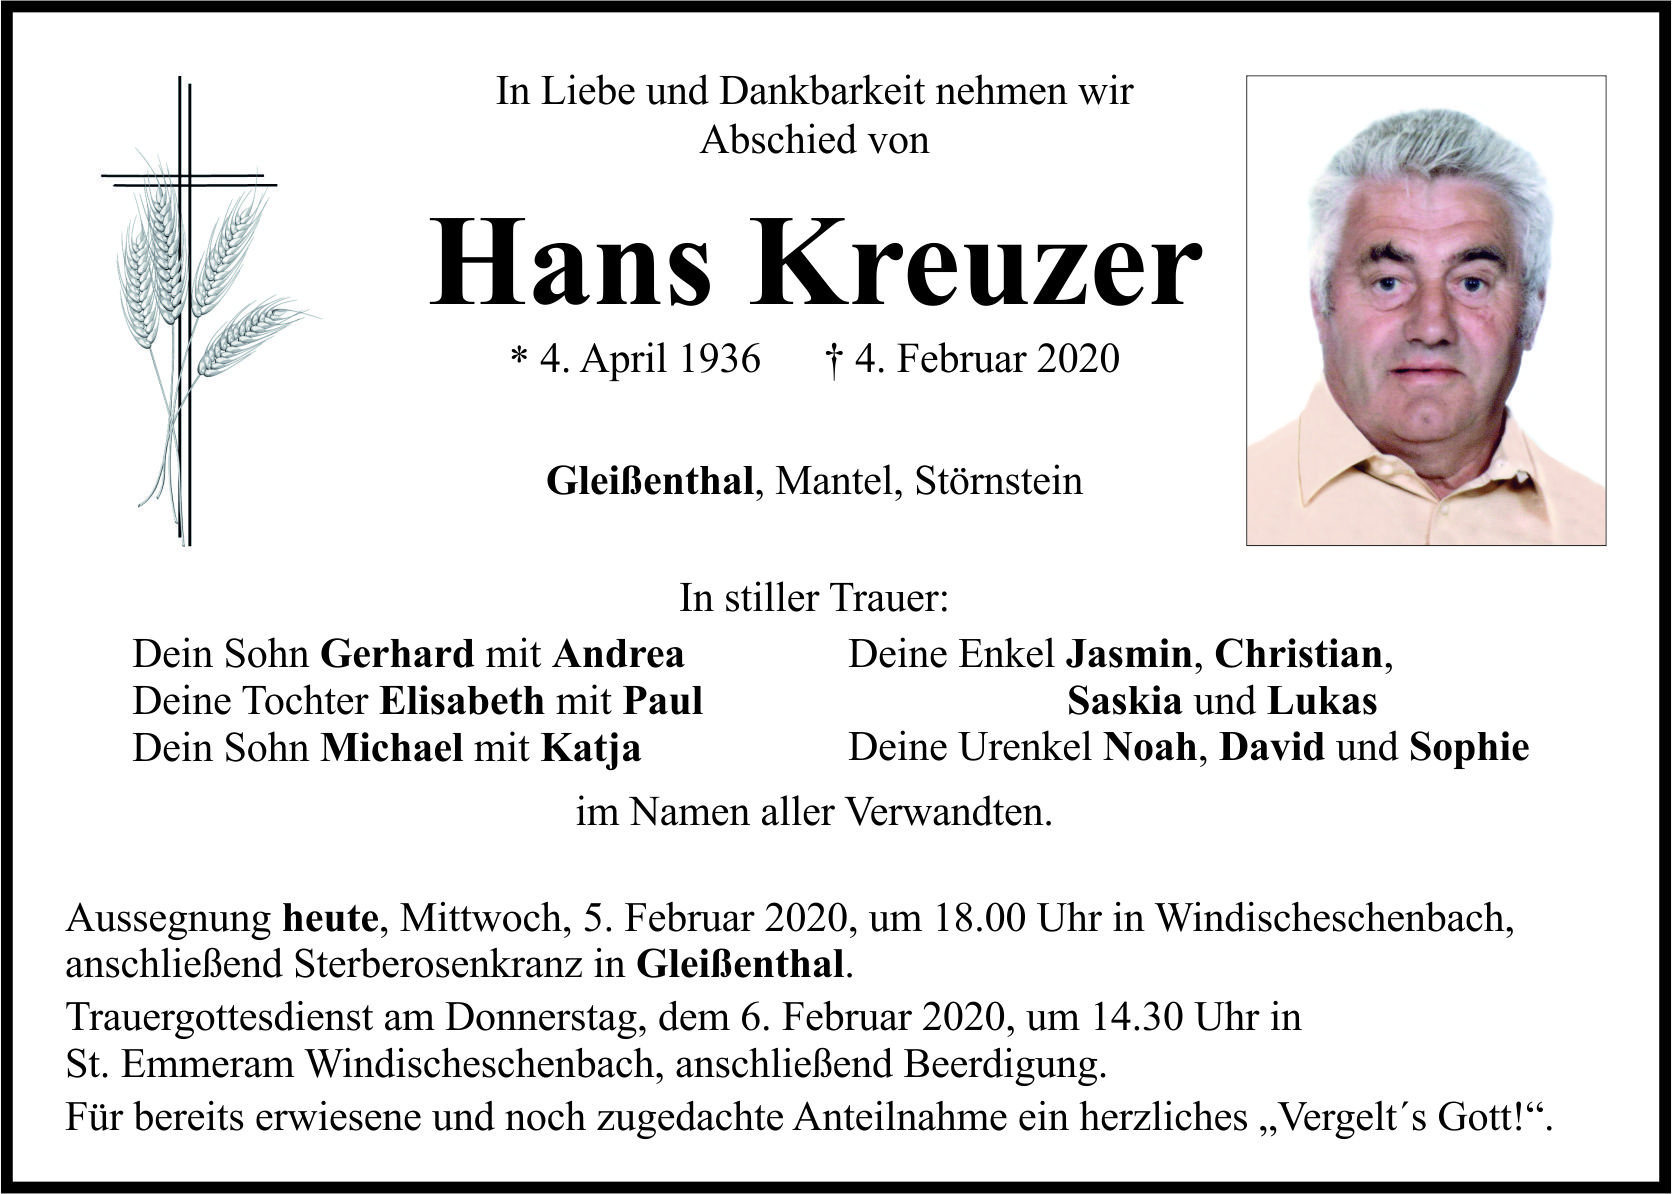 Traueranzeige Hans Kreuzer, Gleißenthal